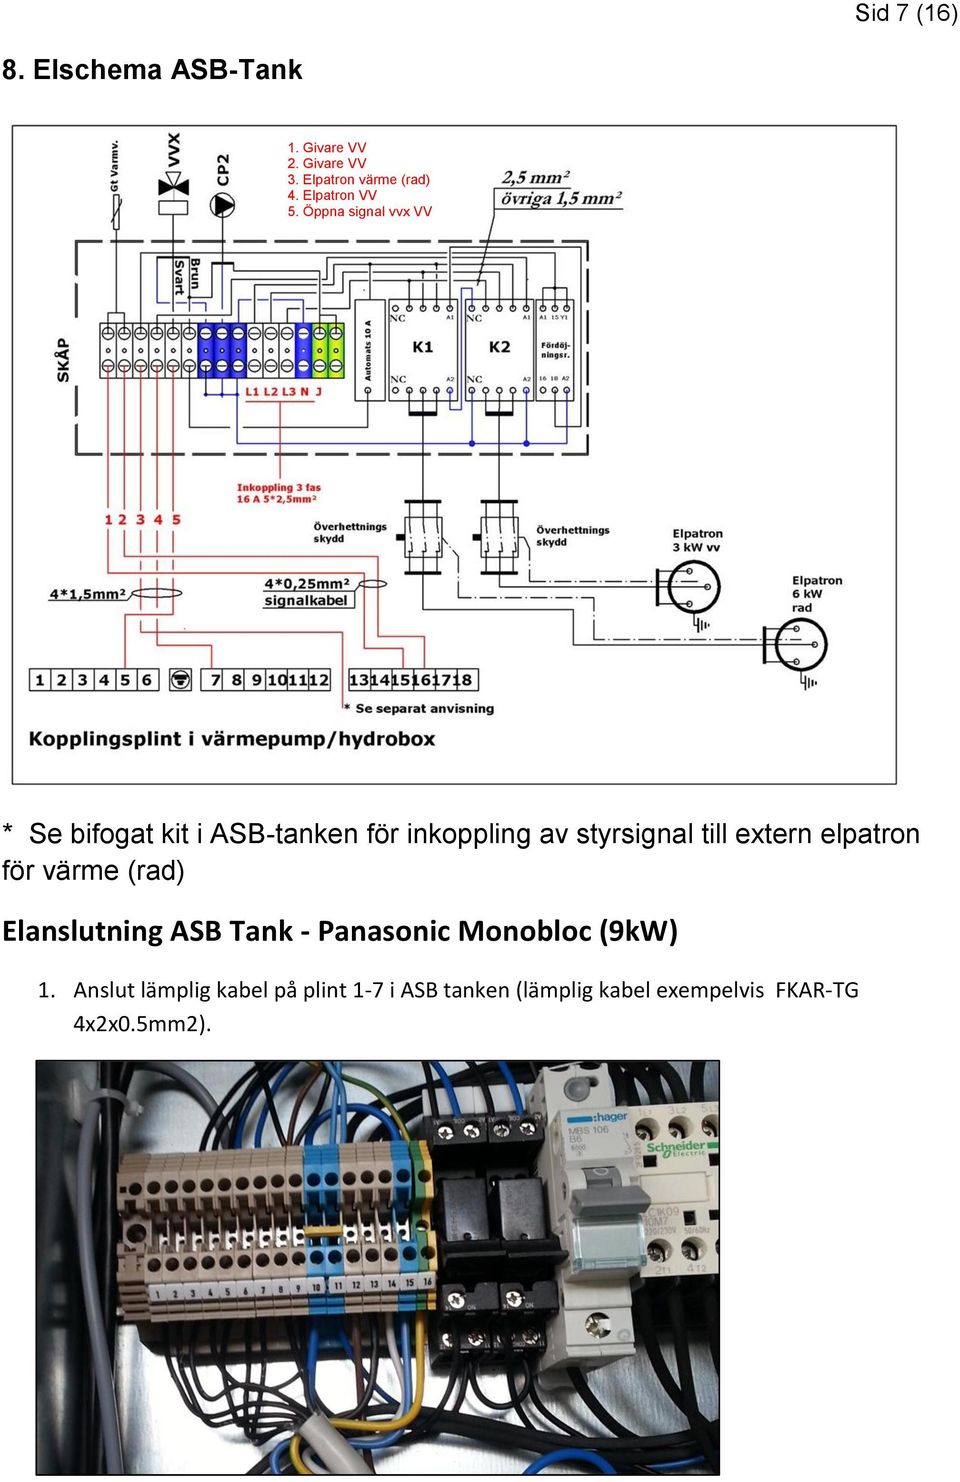 Öppna signal vvx VV * Se bifogat kit i ASB-tanken för inkoppling av styrsignal till extern